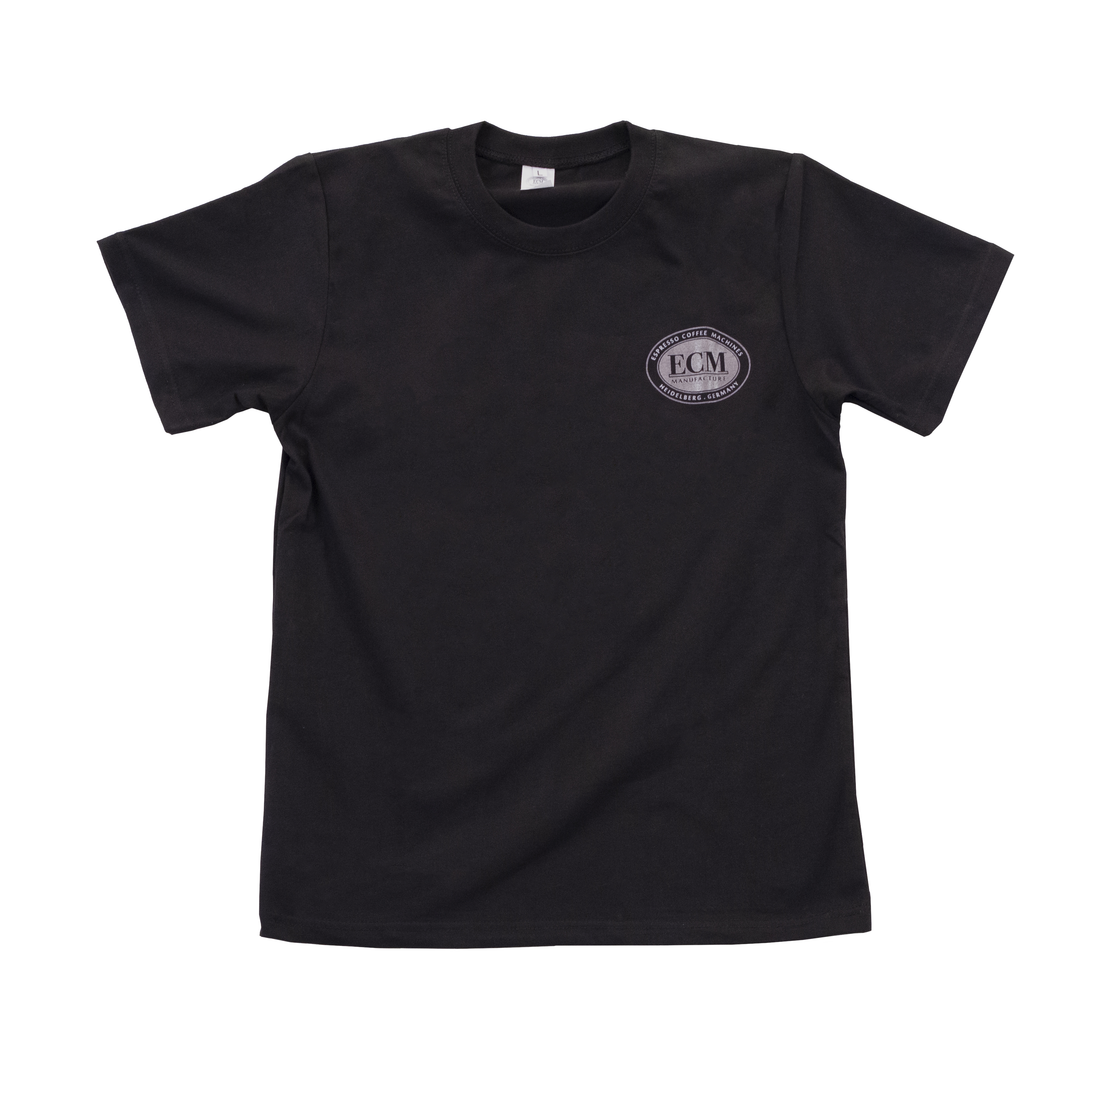 ECM Black Logo T-Shirt - Size XXL